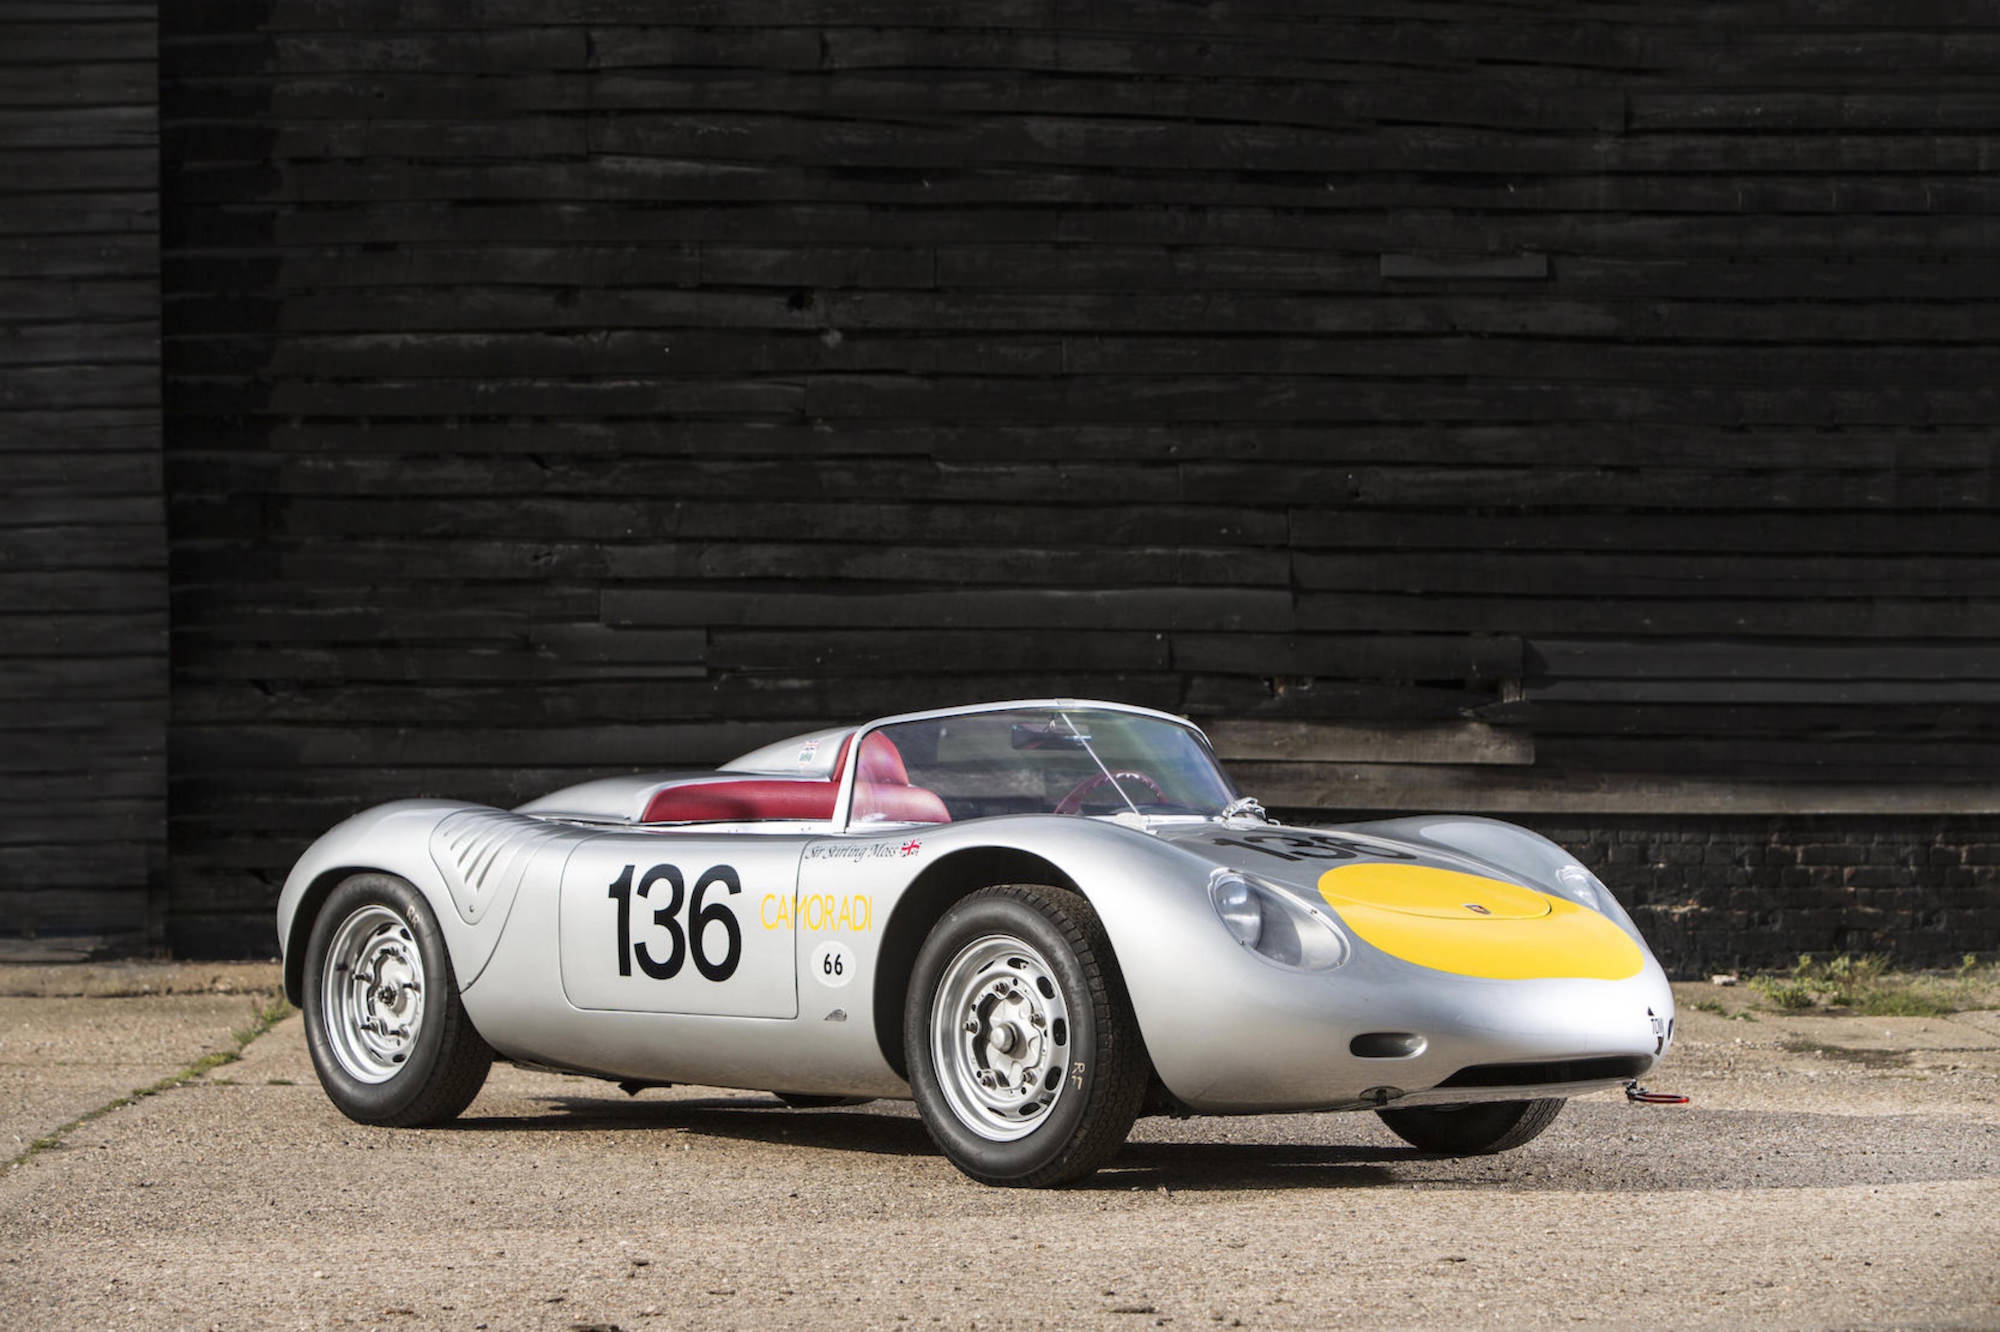 Sir Stirling Moss' Porsche 718